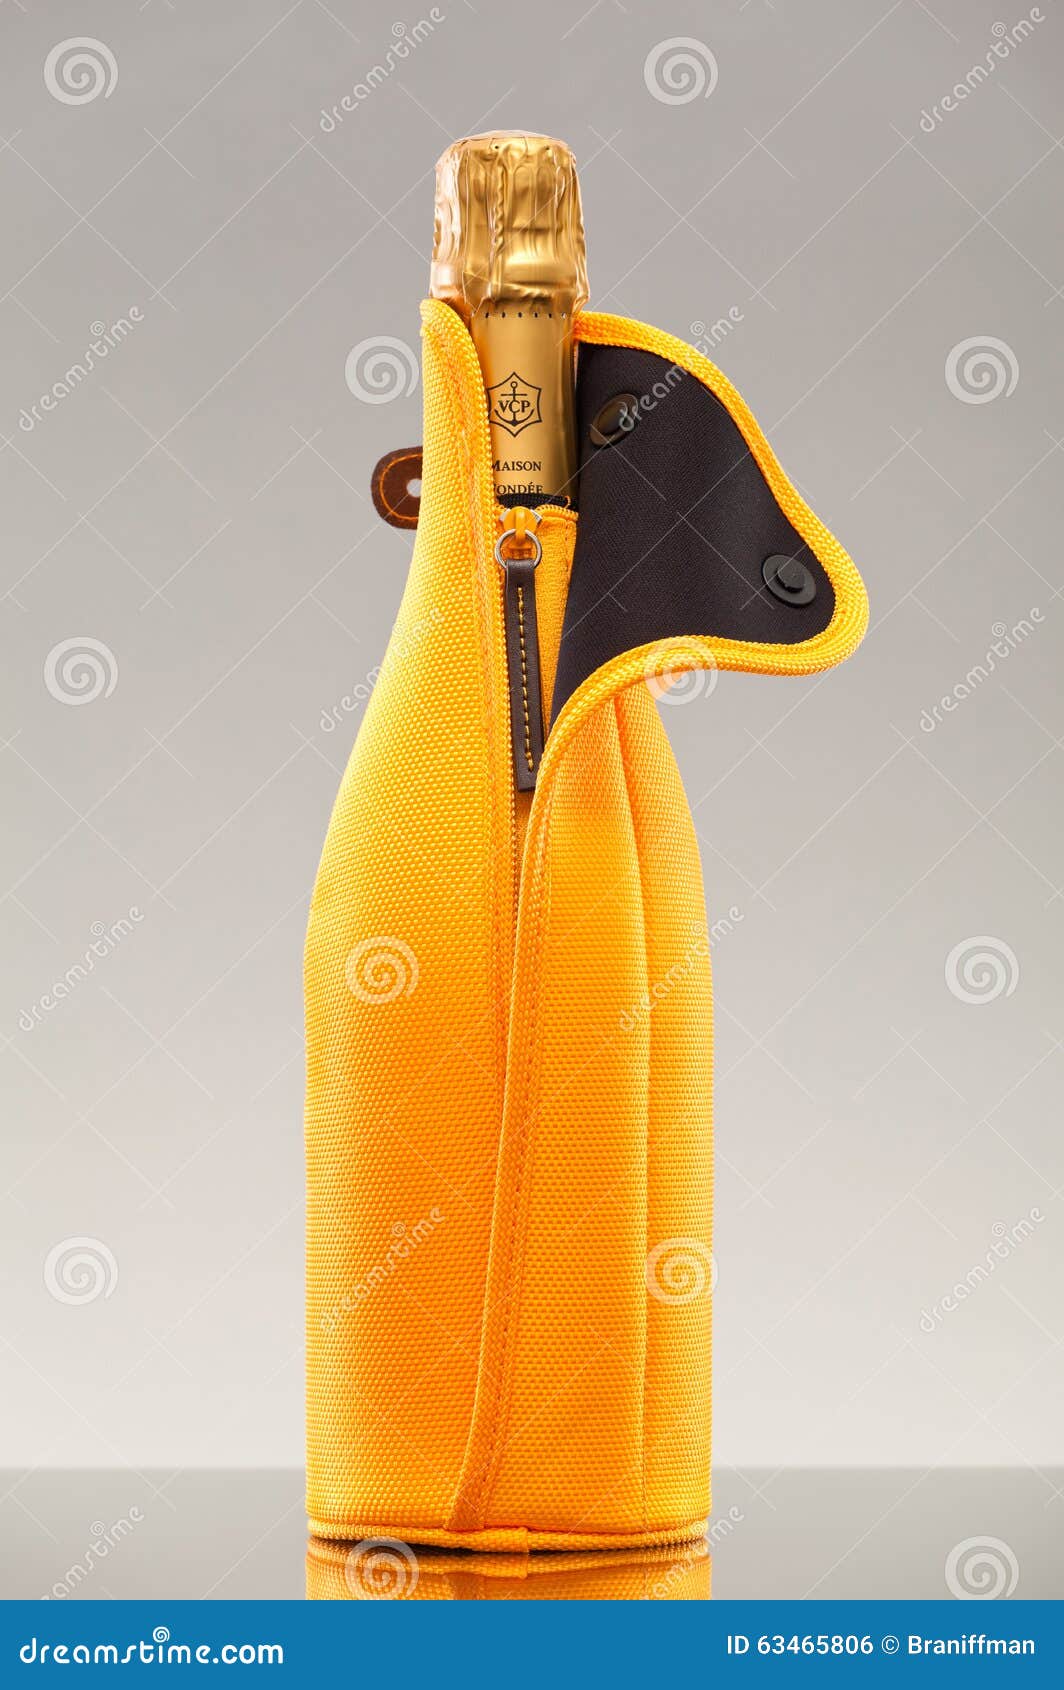  Veuve Clicquot VCP Champagne Bottle Cooler Cork Yellow